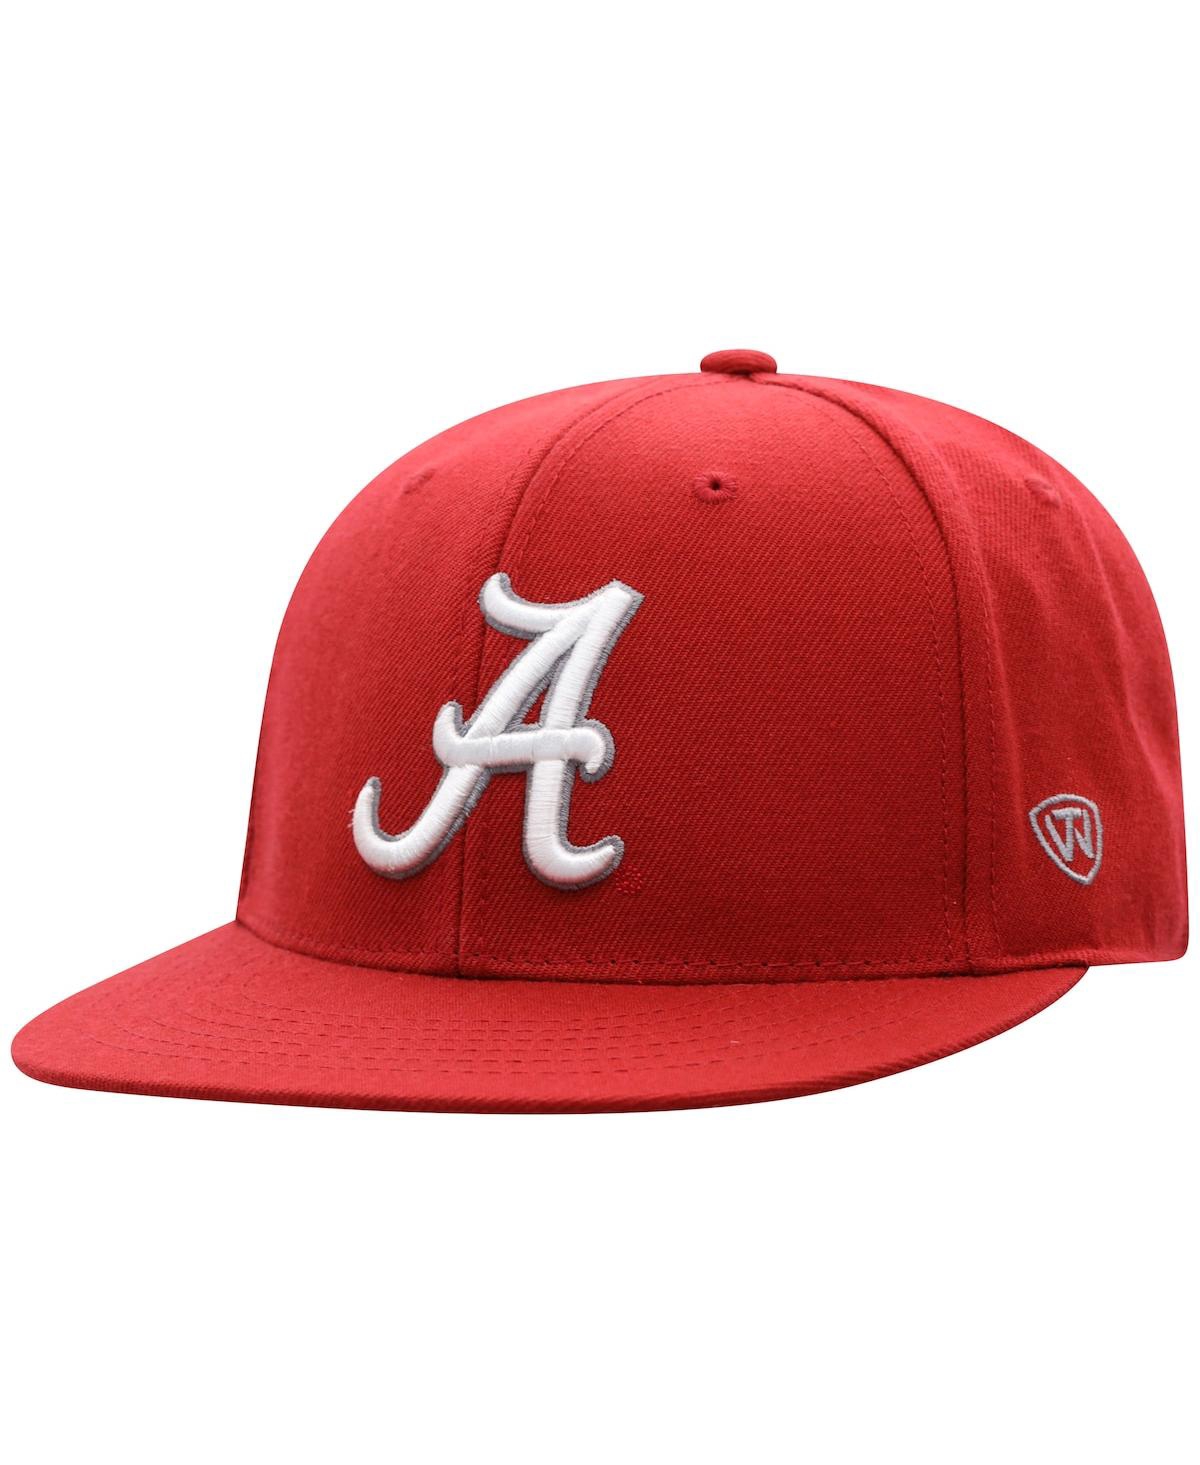 Shop Top Of The World Men's  Crimson Alabama Crimson Tide Team Color Fitted Hat